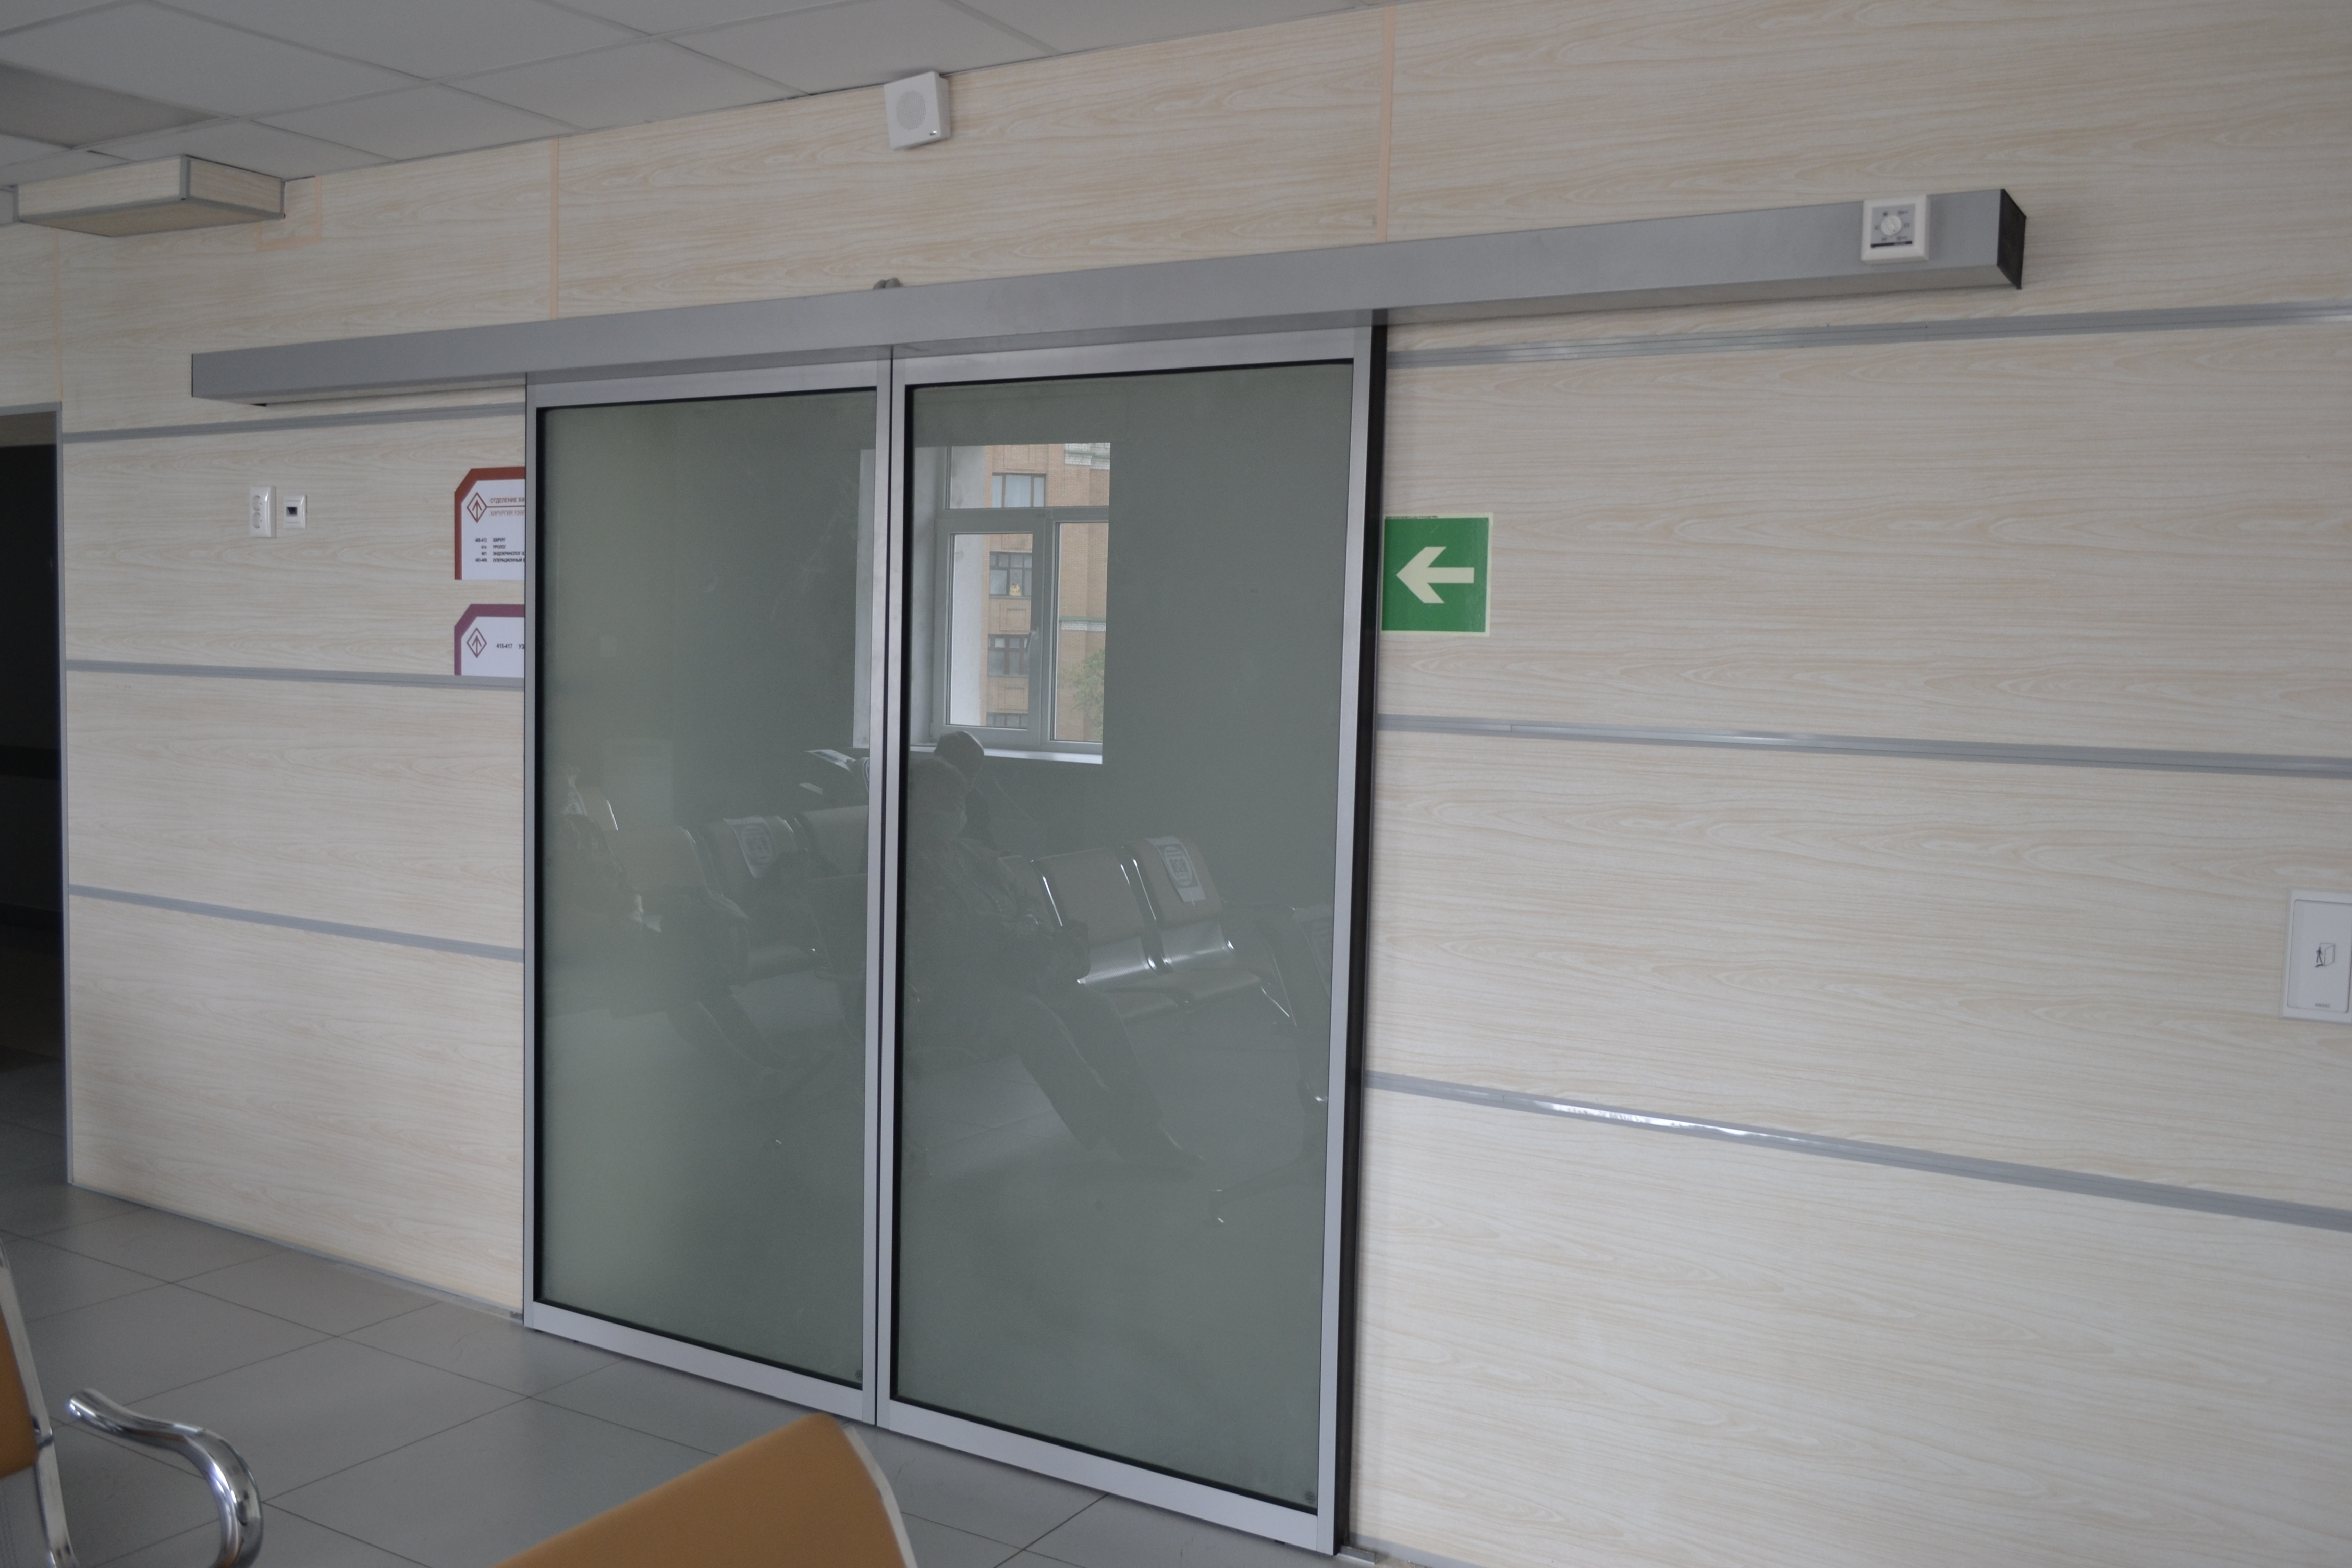 Автоматические двери в больнице от ГК "Дверные Системы" - 1